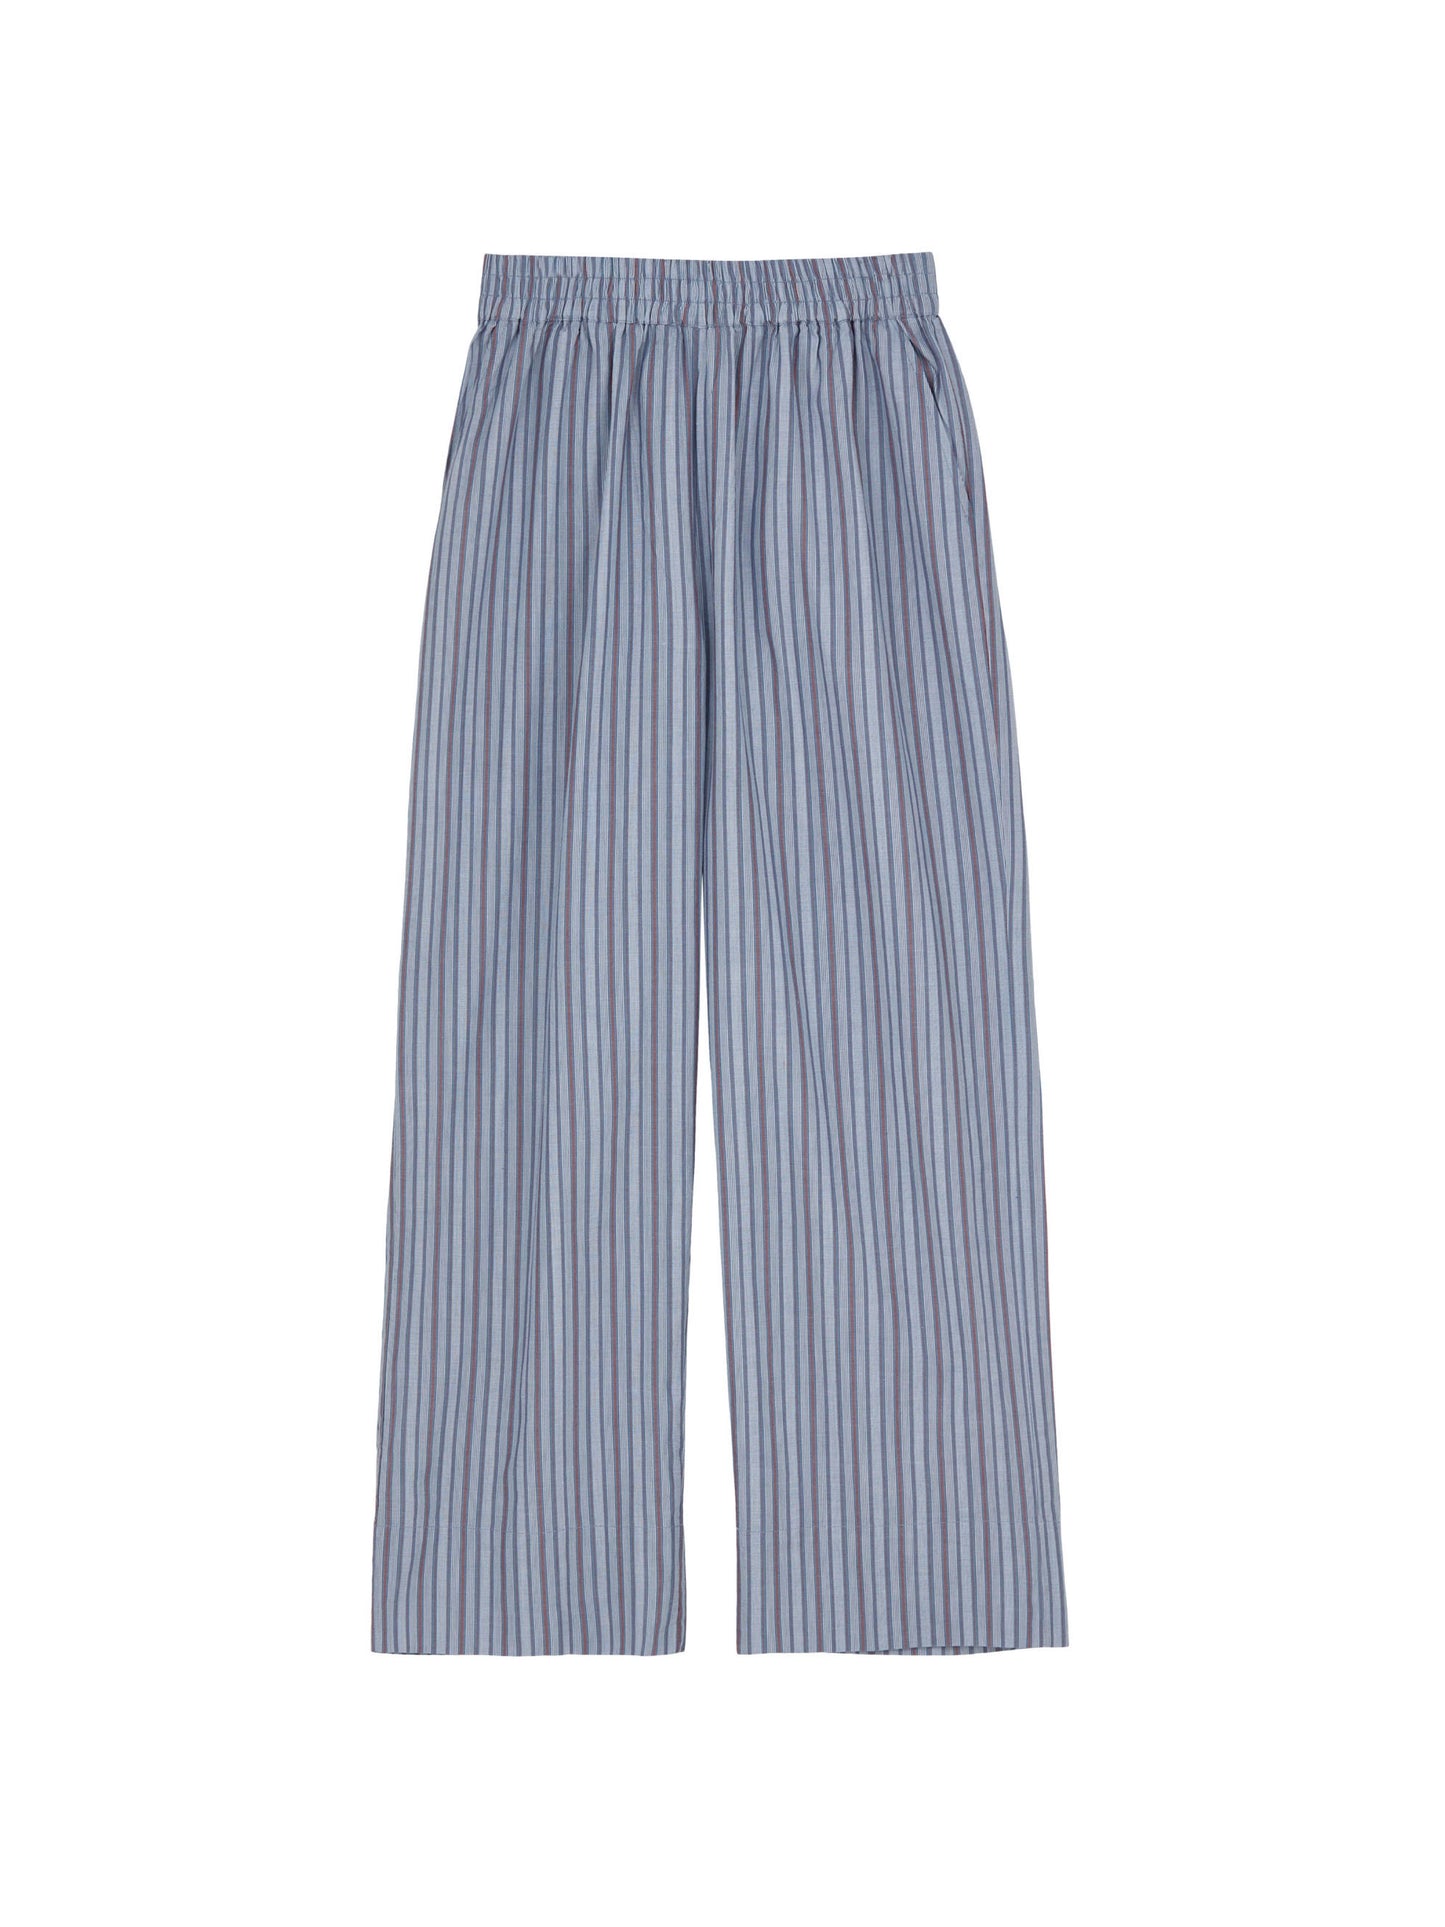 Skall - Jasmine pants - Blue/red stripe